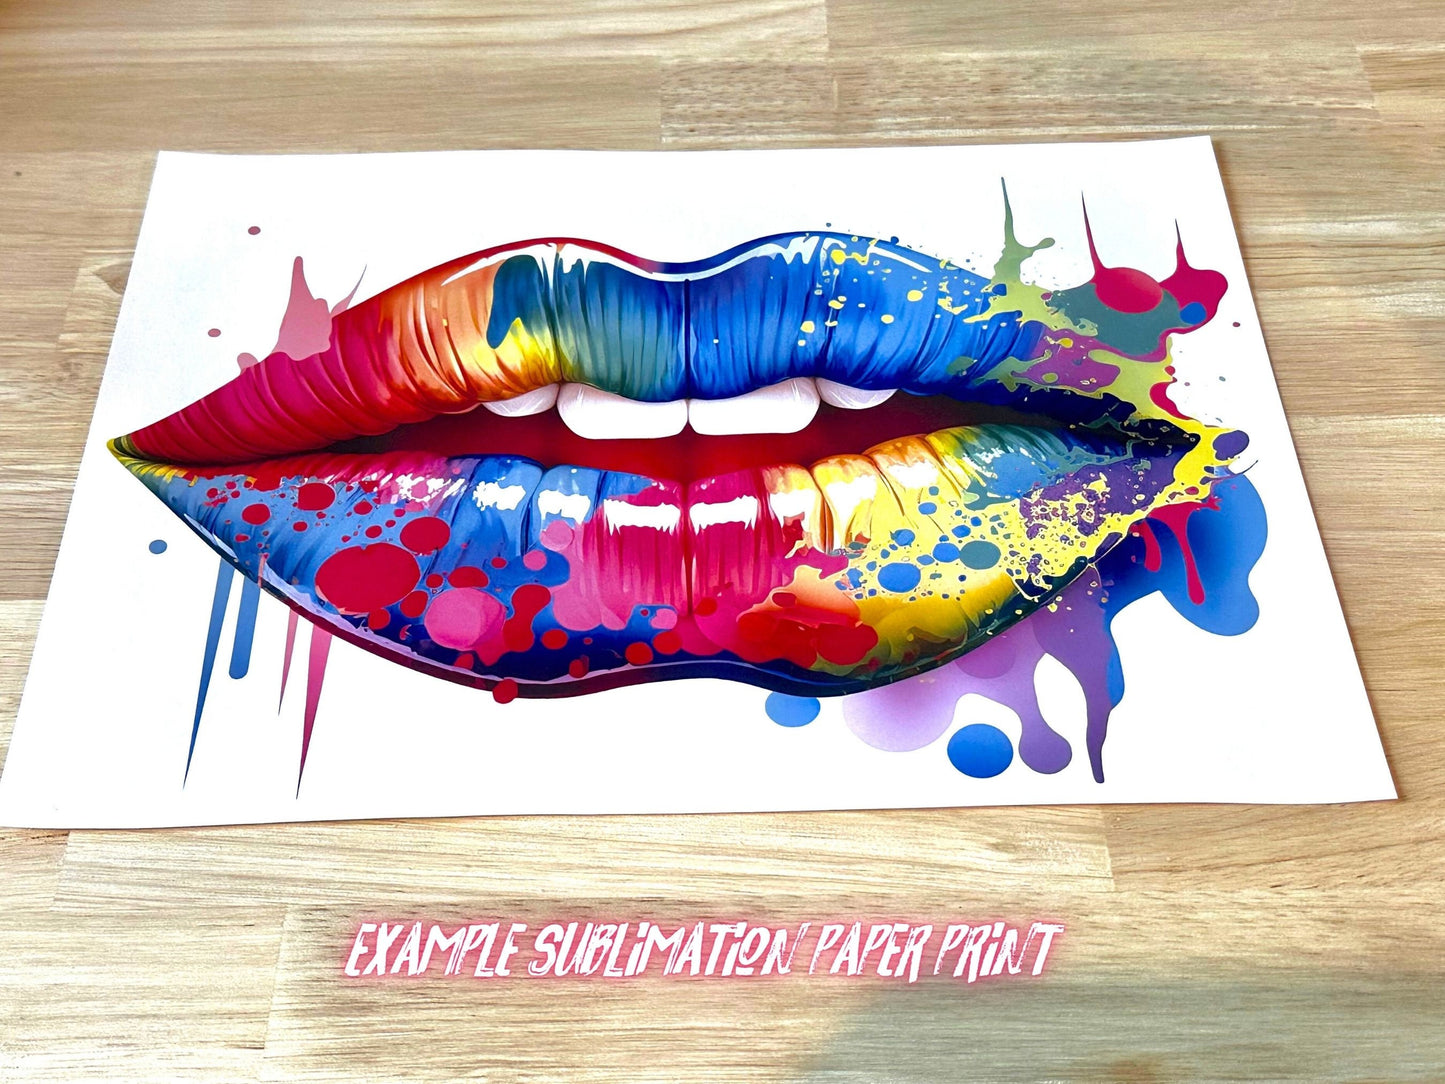 Best Seller Paint Splattered Lips PNG - Vibrant Sublimation & Clipart Design, High-Res Digital Download